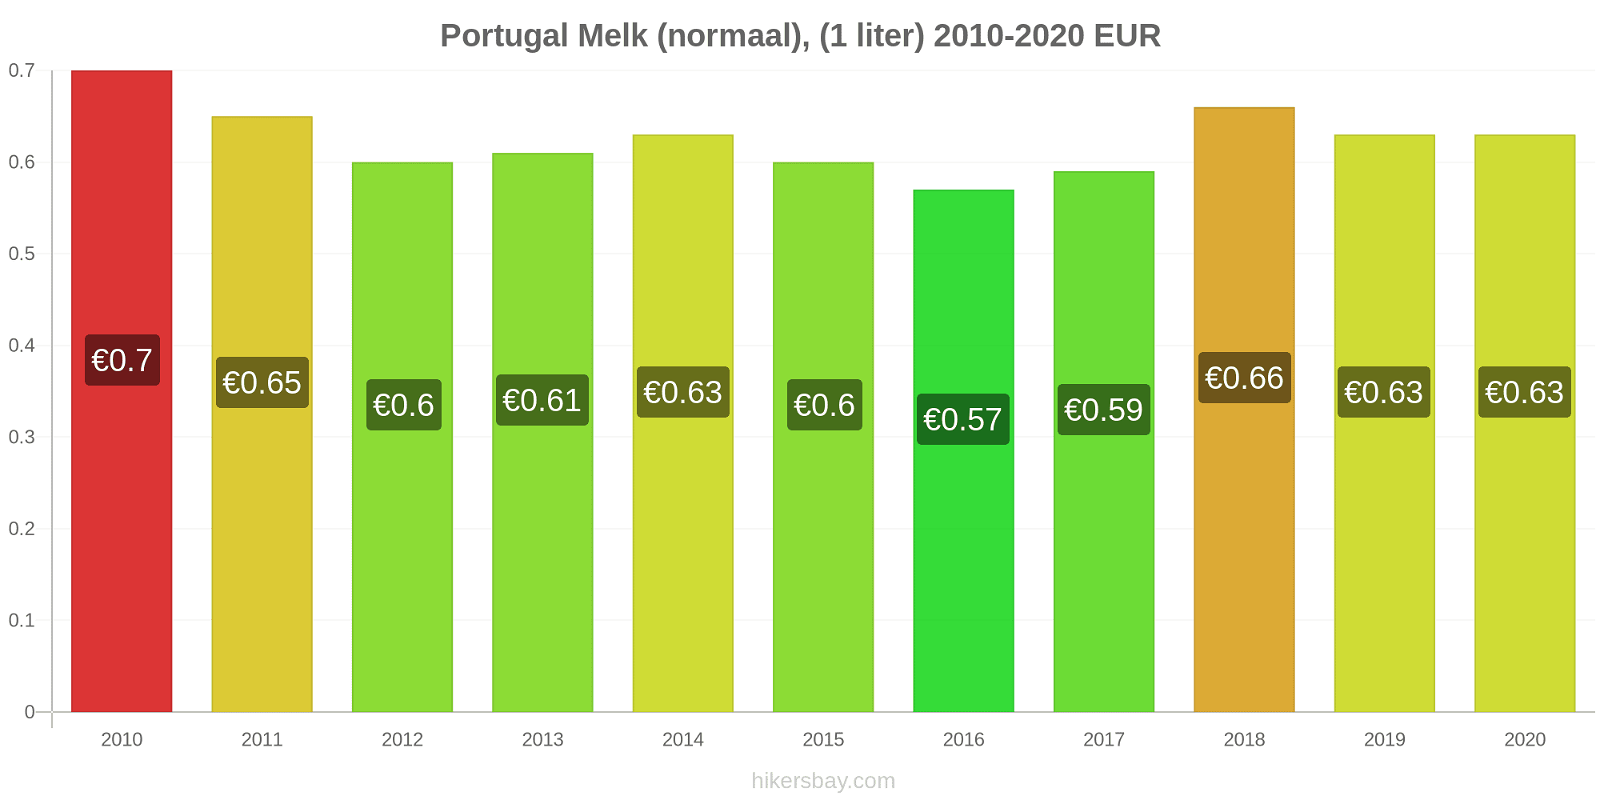 Portugal prijswijzigingen Melk (regelmatige), (1 liter) hikersbay.com